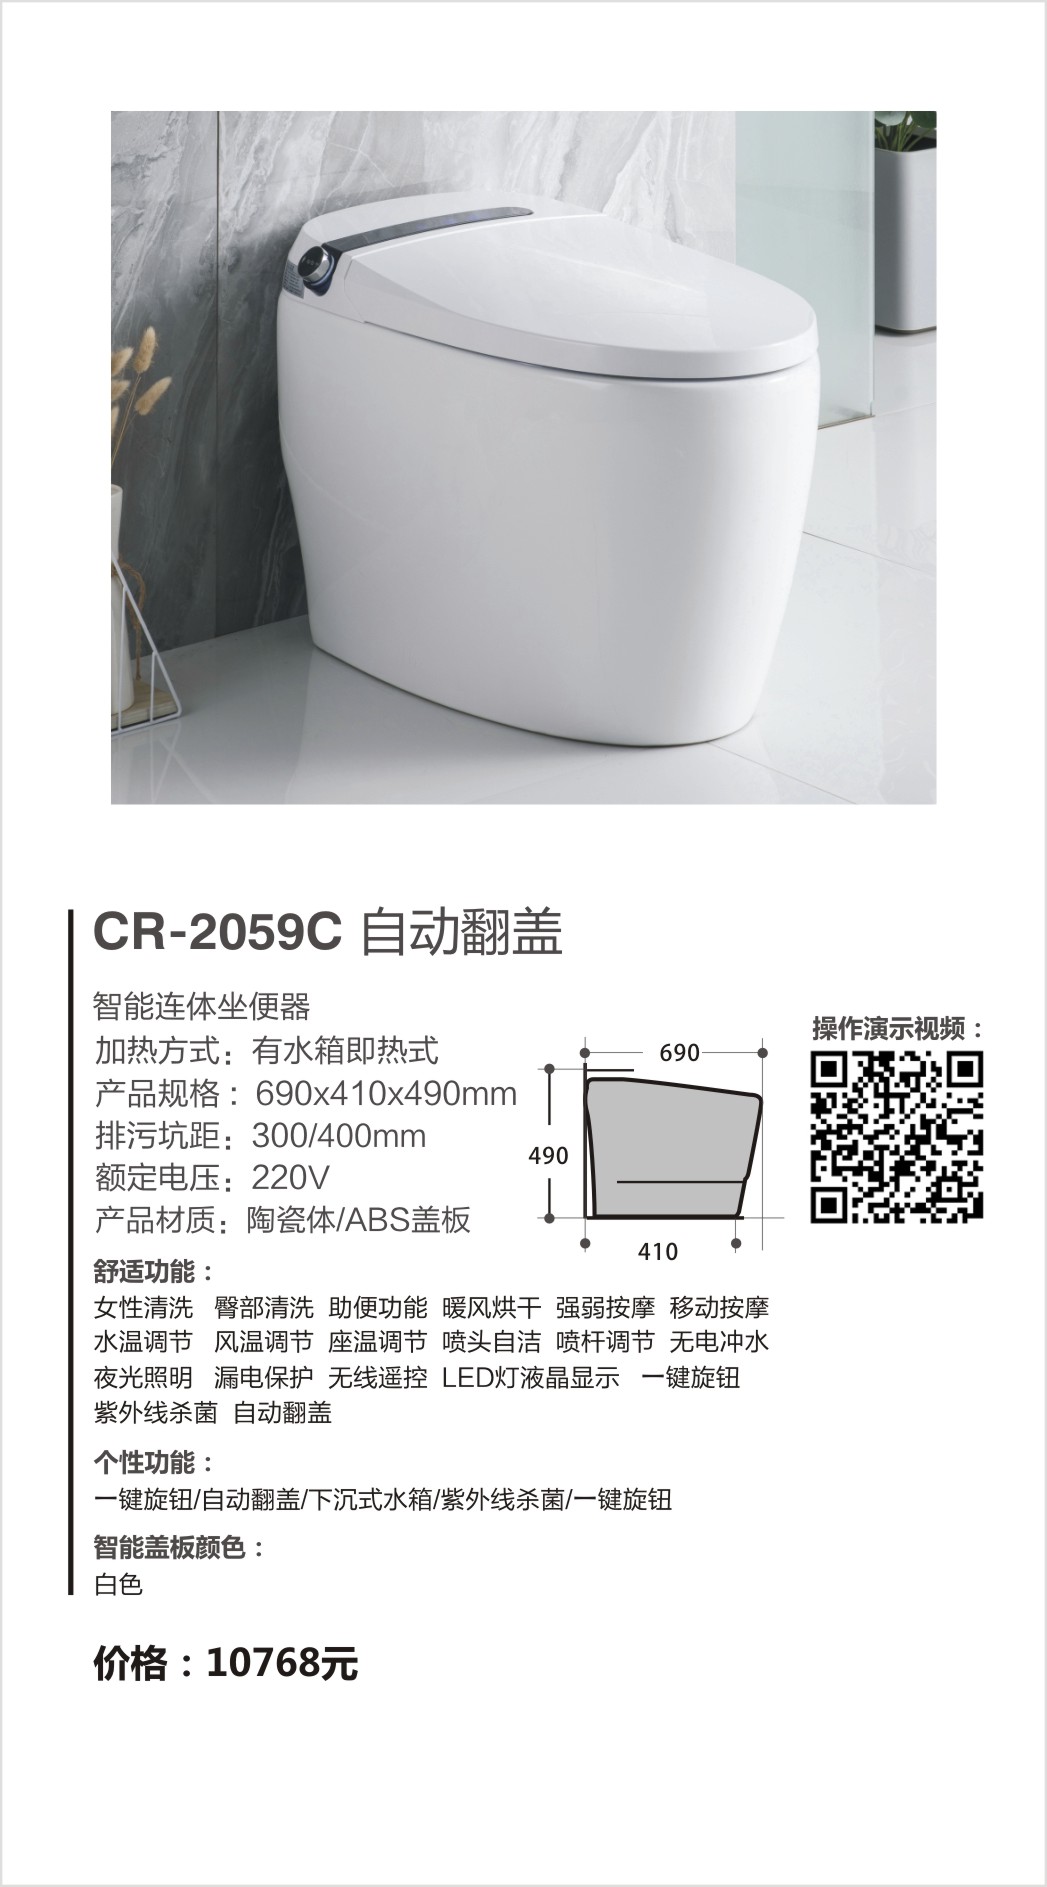 超人（chaoren）卫浴系列智能马桶CR-2059C